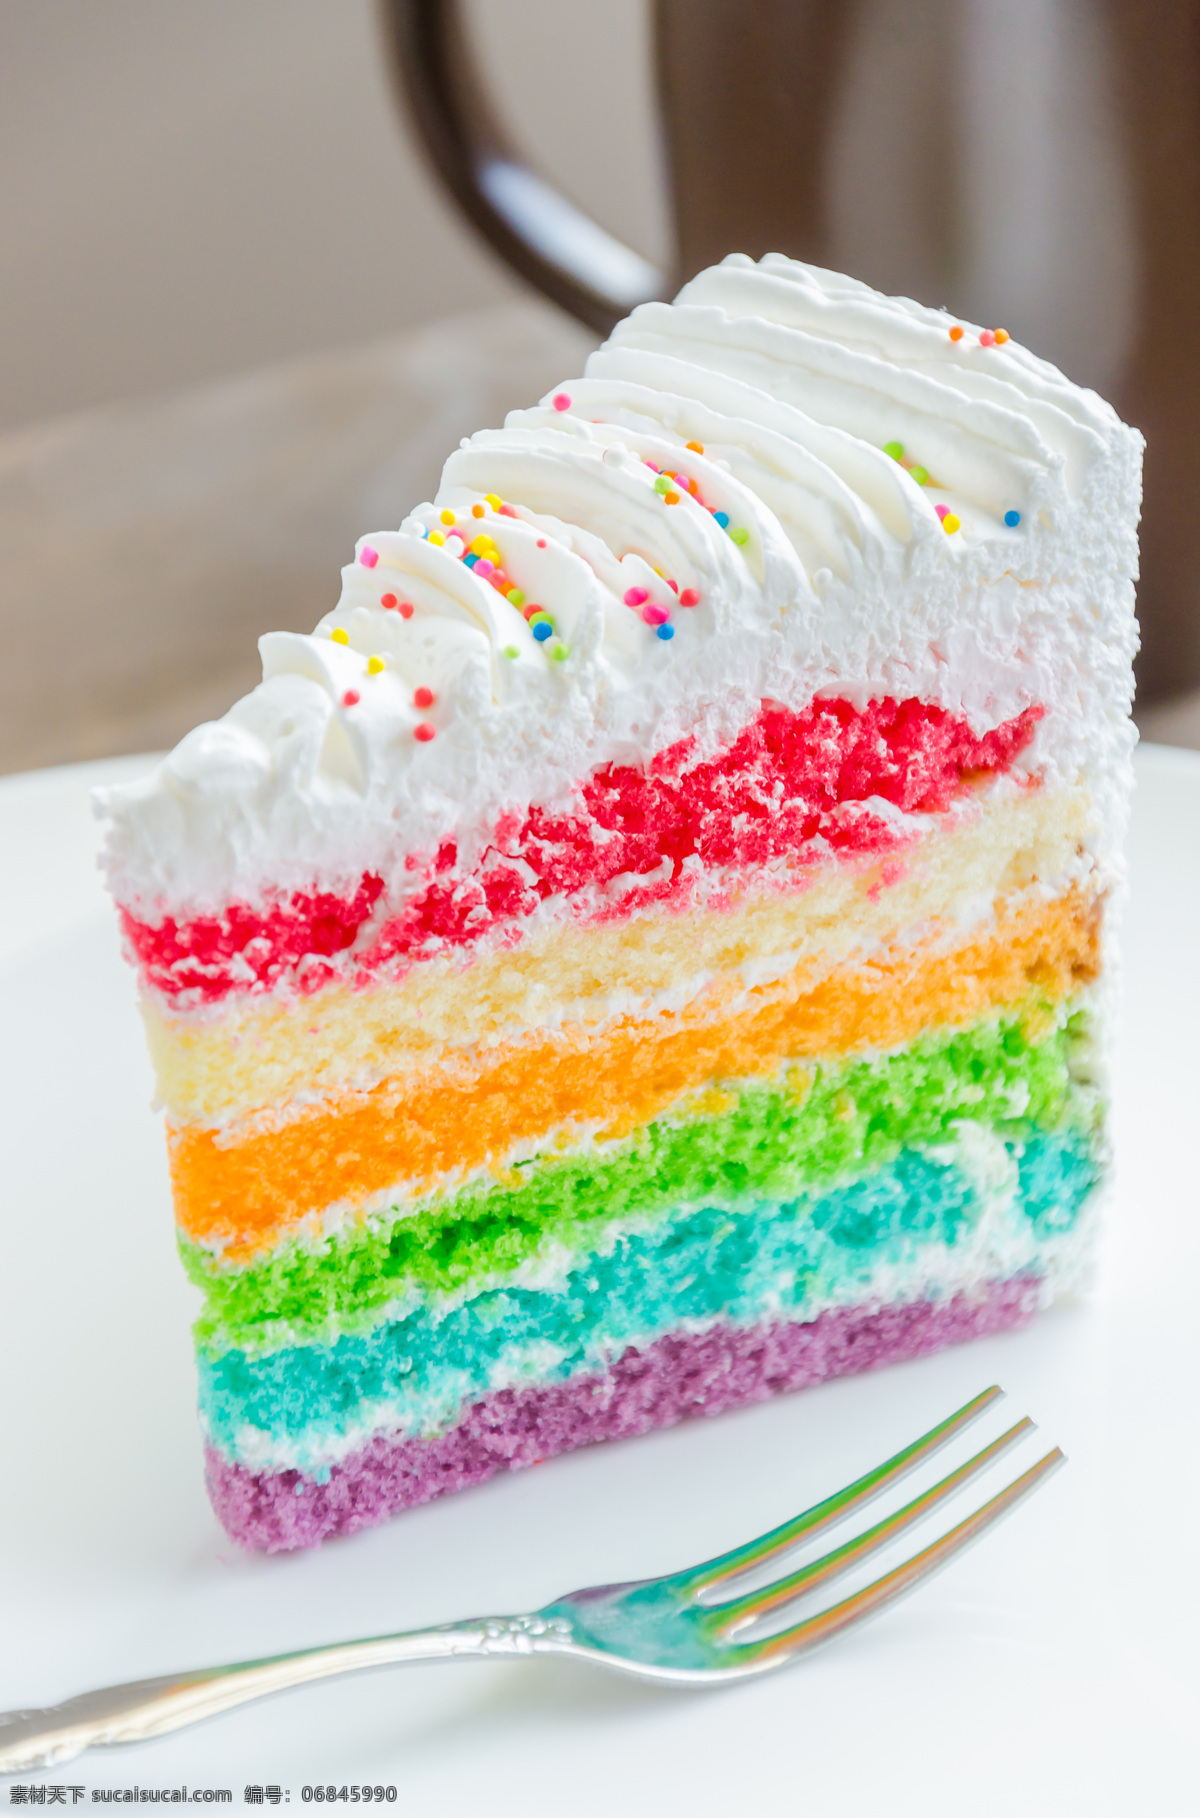 奶油蛋糕 彩虹蛋糕 糕点 甜品 食品 食物 其他类别 餐饮美食 白色